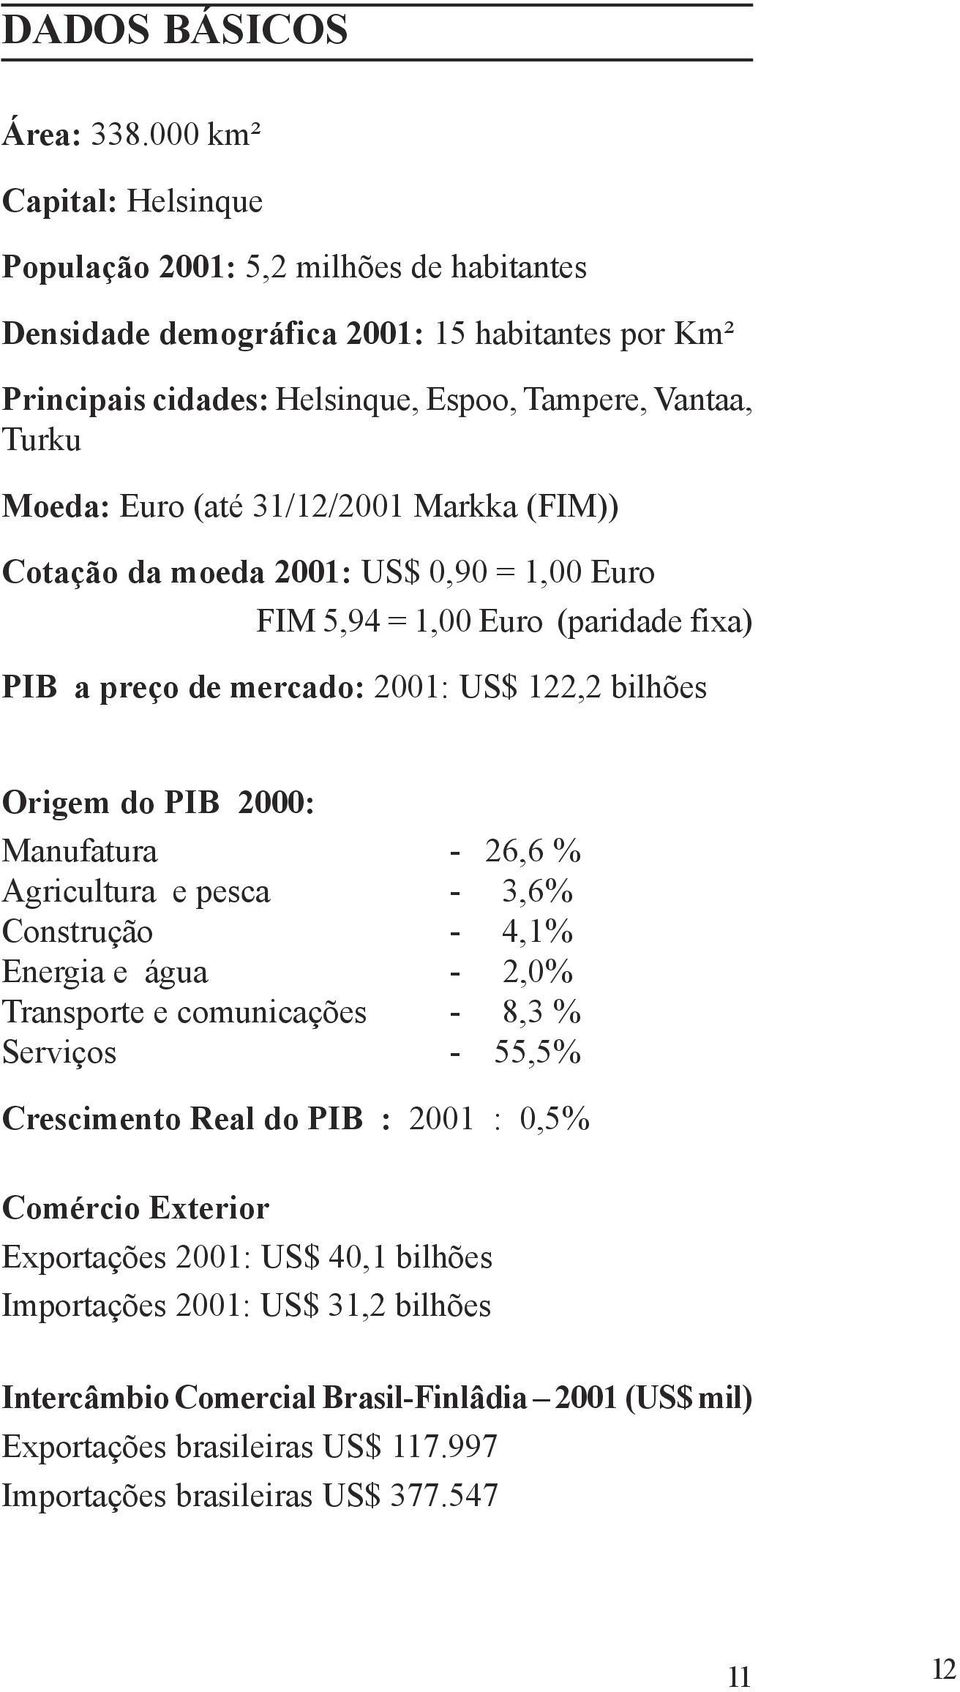 31/12/2001 Markka (FIM)) Cotação da moeda 2001: US$ 0,90 = 1,00 Euro FIM 5,94 = 1,00 Euro (paridade fixa) PIB a preço de mercado: 2001: US$ 122,2 bilhões Origem do PIB 2000: Manufatura - 26,6 %